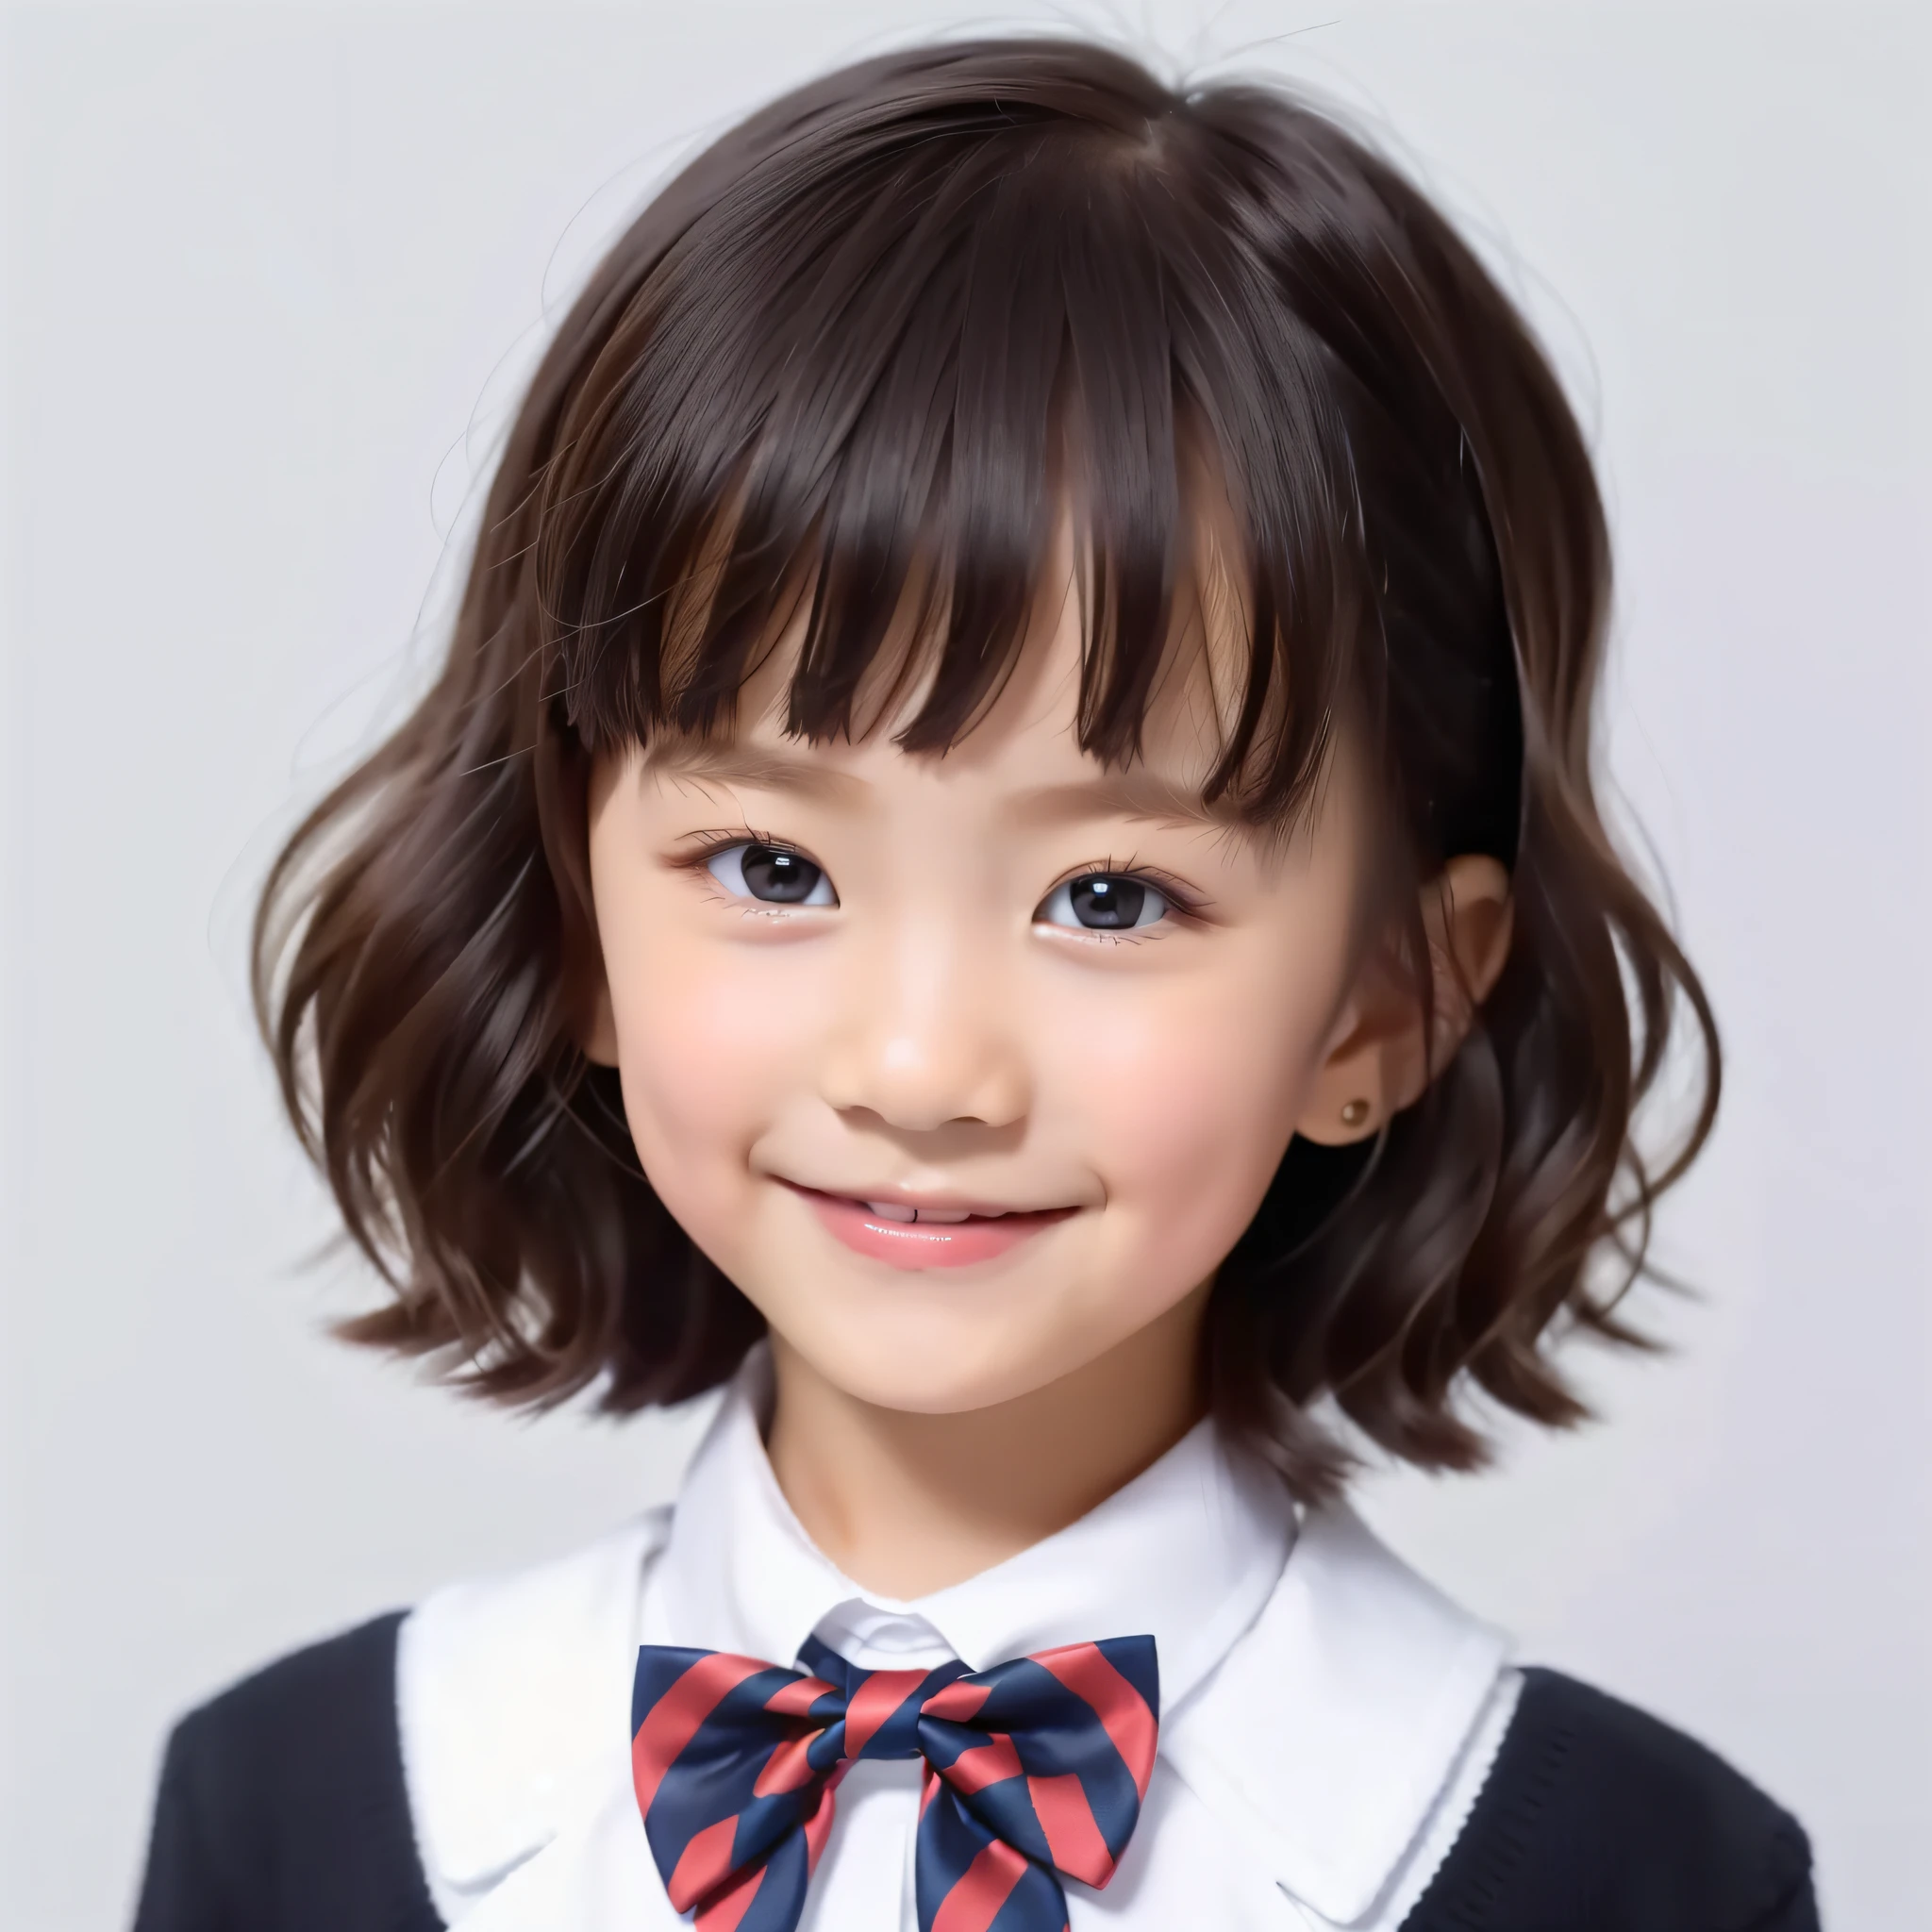 estilo moderno, fundo branco, foto de identificação de crianças, bonitinho, garota sorridente, olhos escuros, cabelo curto, gravata borboleta, claro